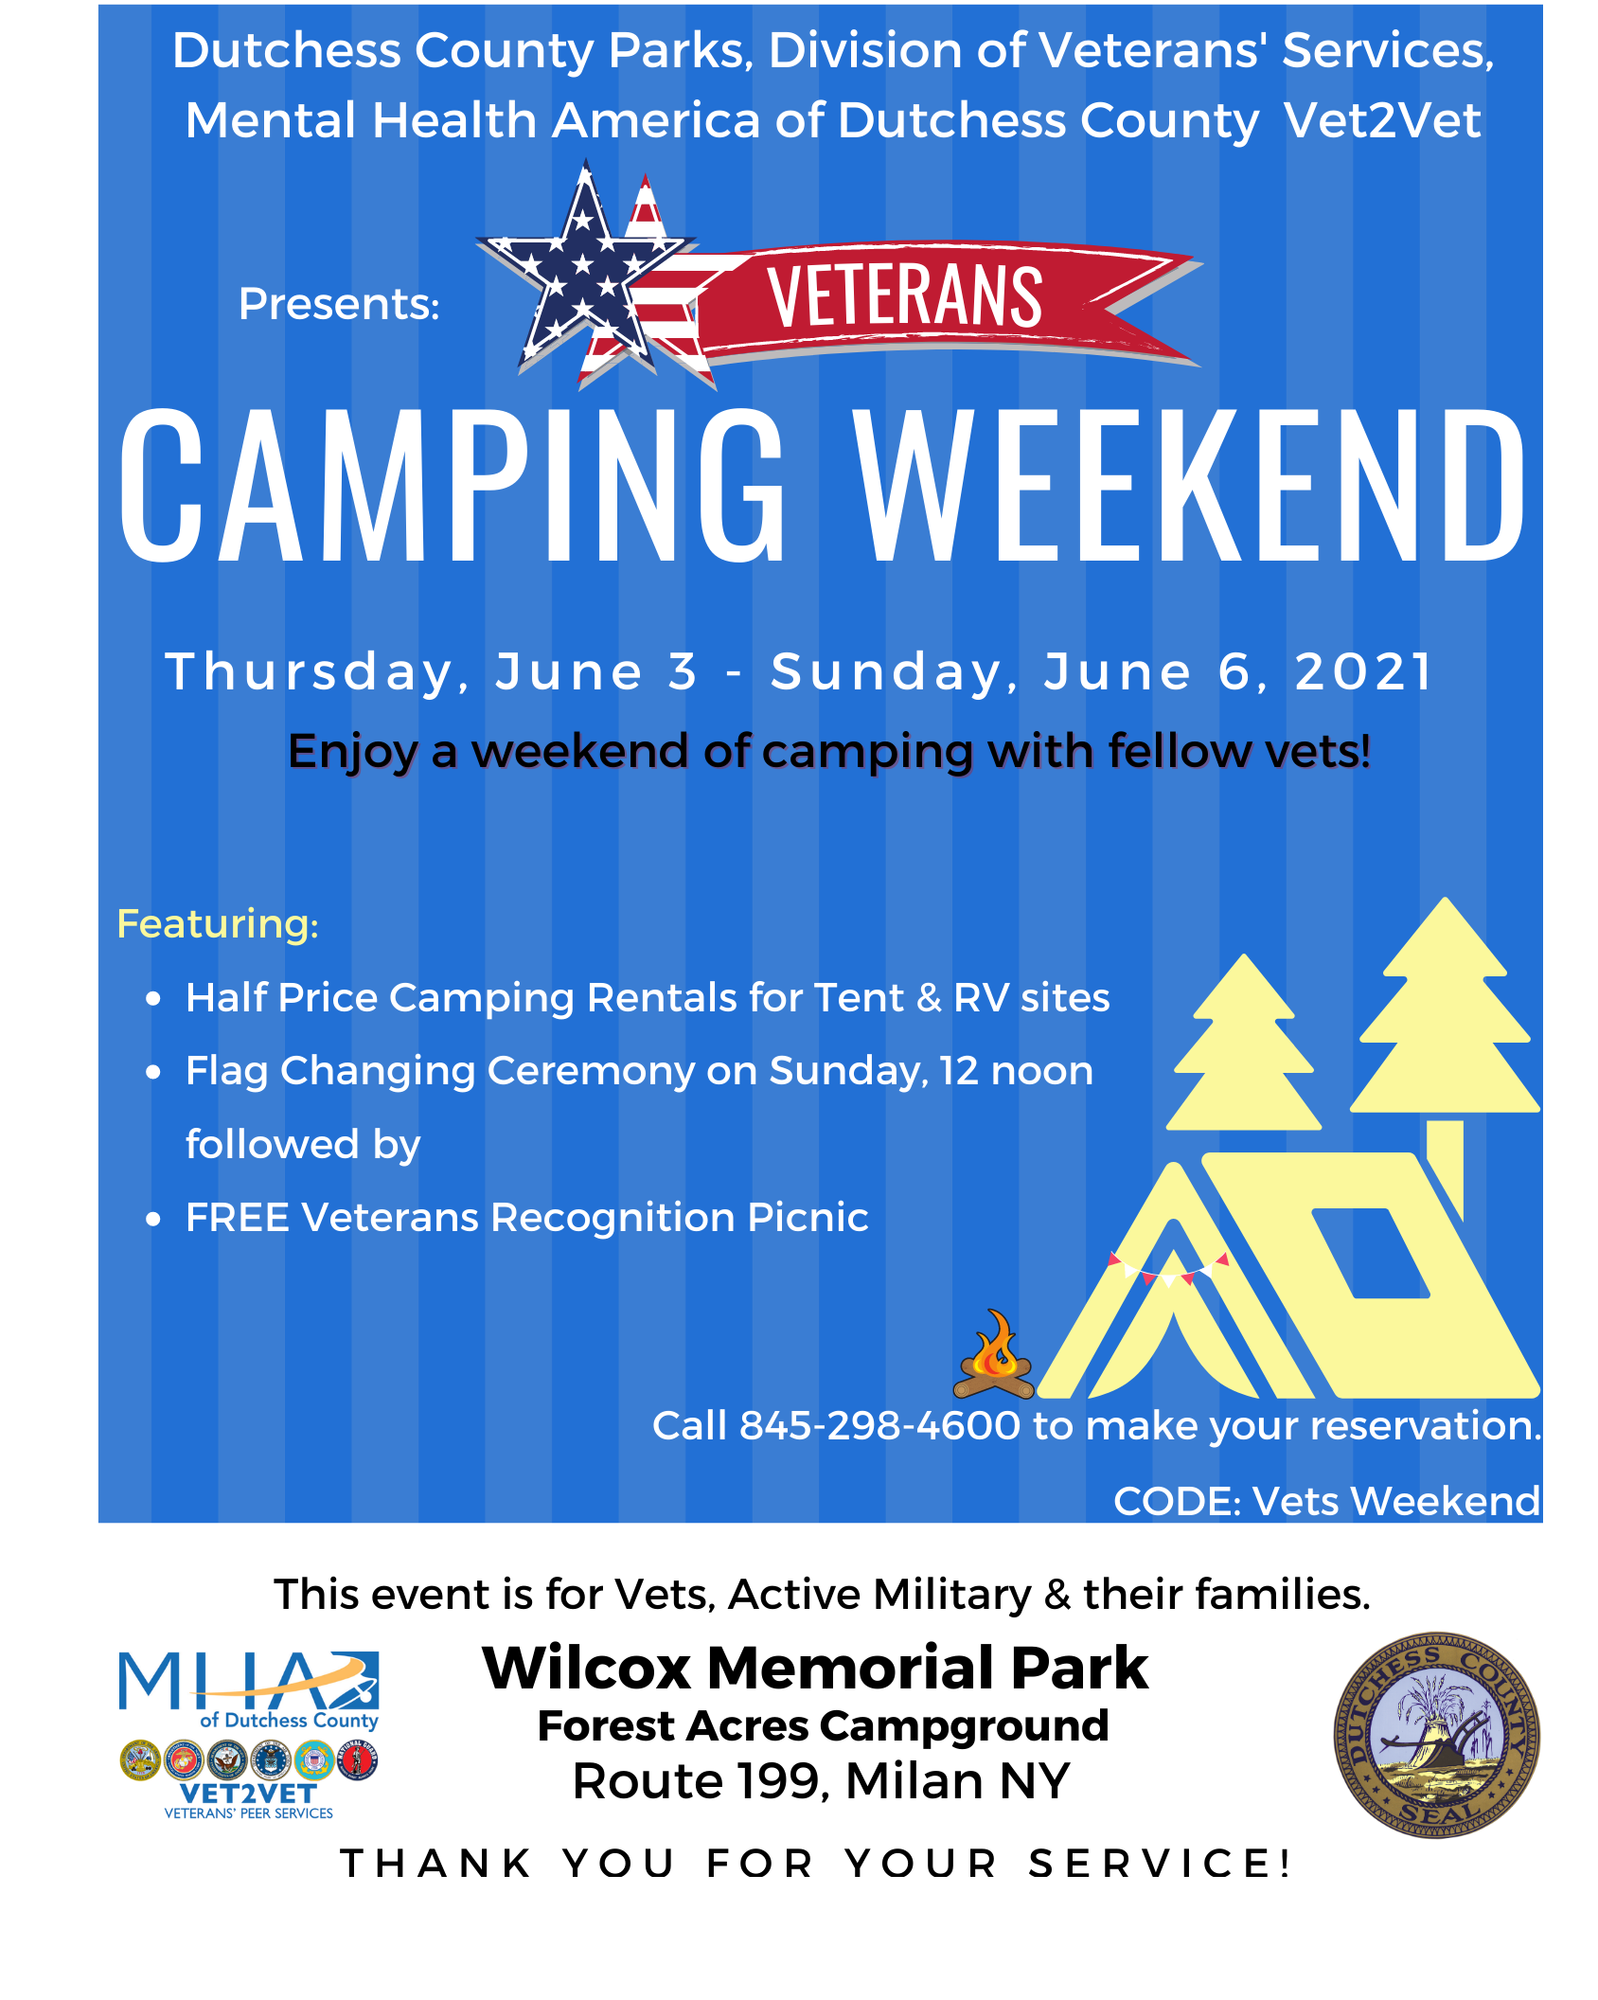 Veterans Camping Weekend